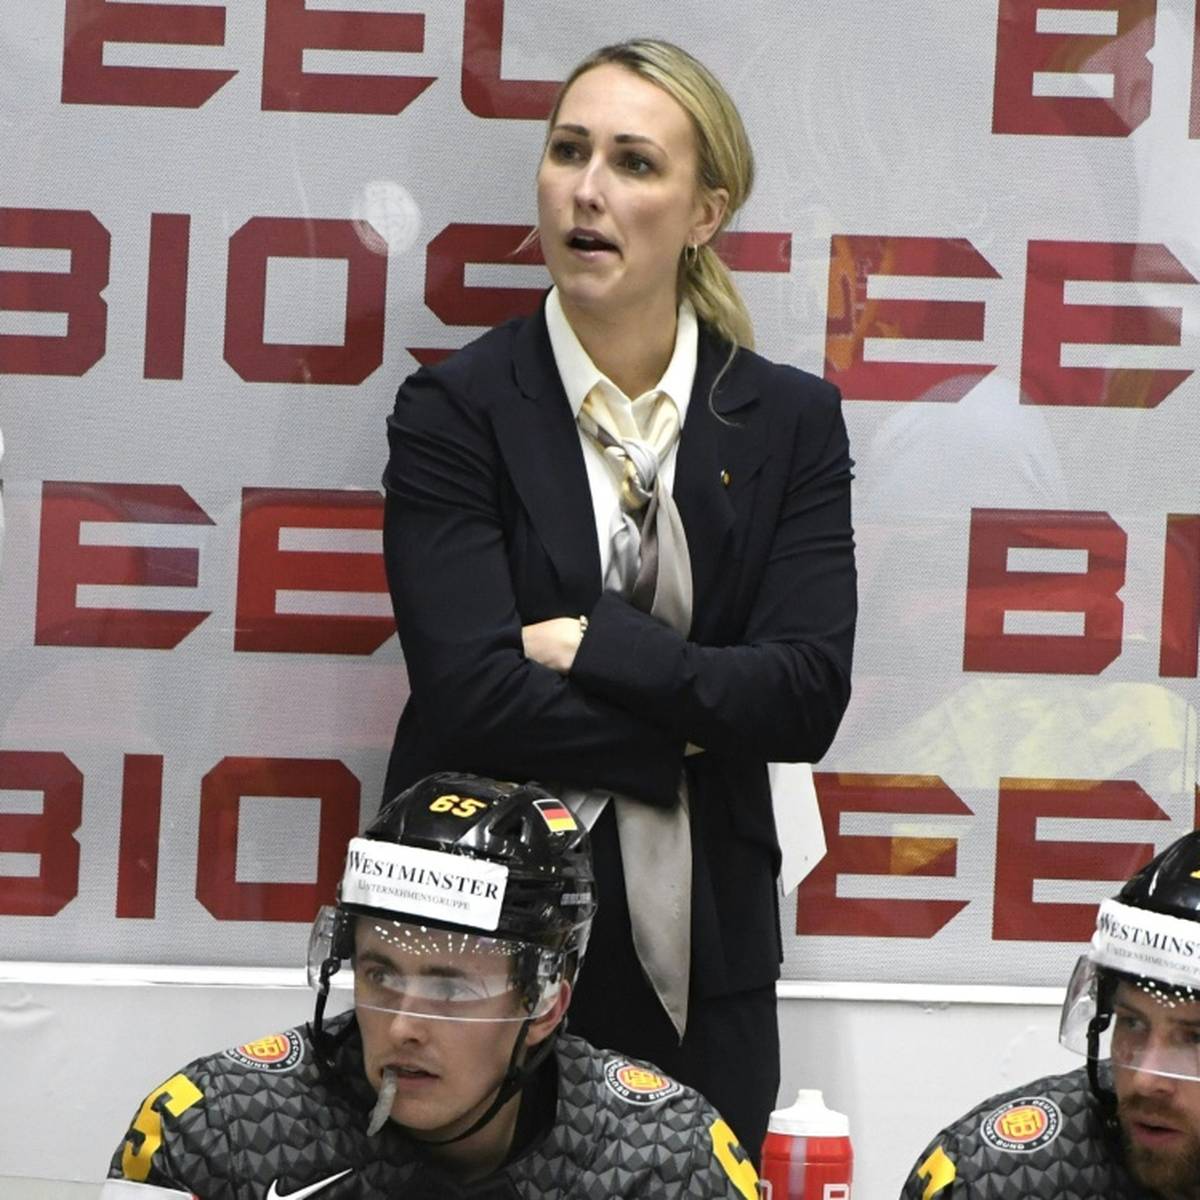 Ihr Abstecher nach Deutschland zahlt sich aus: Jessica Campbell macht jetzt Karriere in der USA. In der AHL schreibt die ehemalige kanadische Eishockey-Nationalspielerin sogar Geschichte.